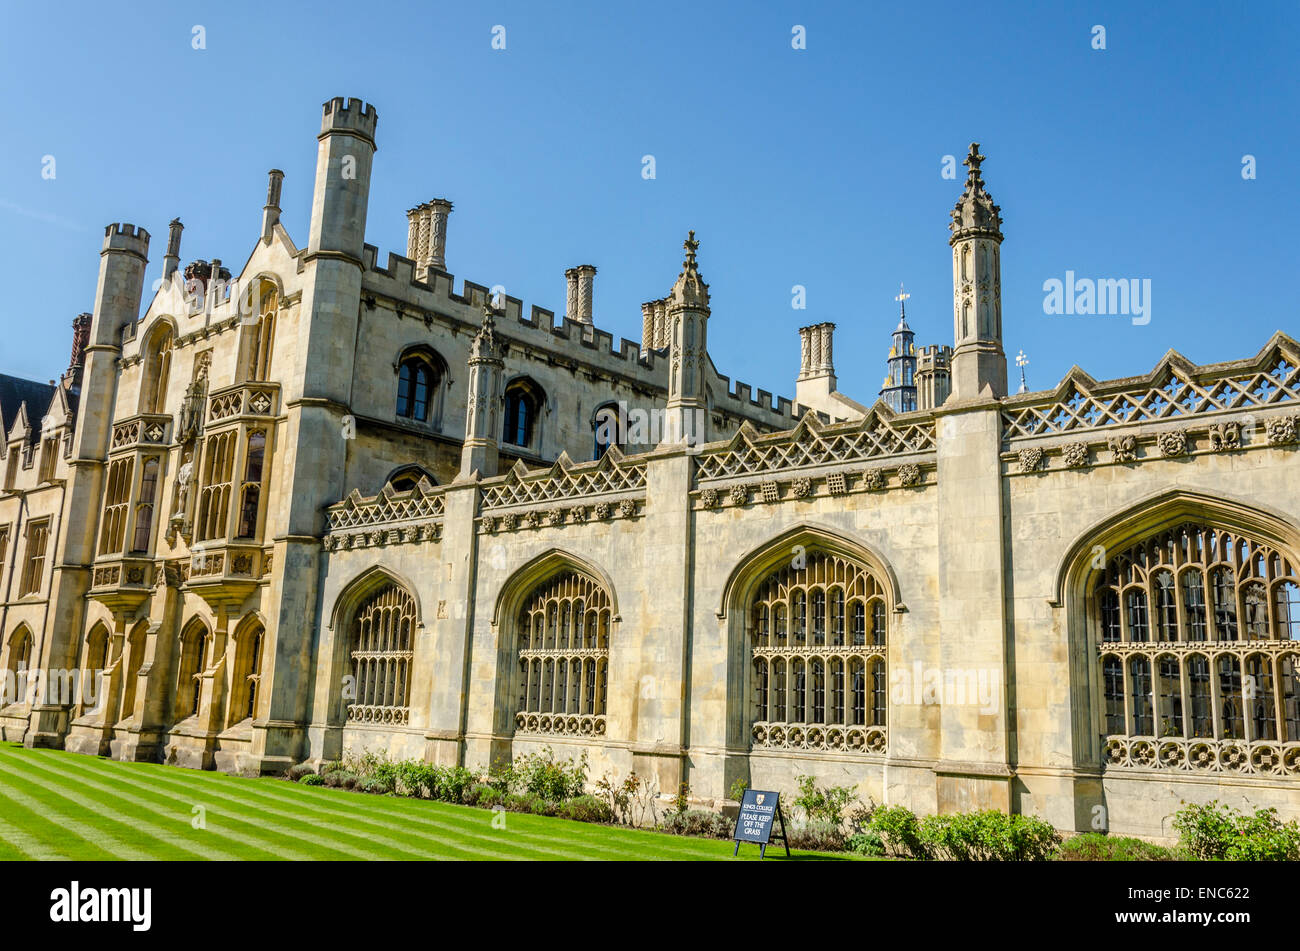 King's College, Cambridge Stock Photo